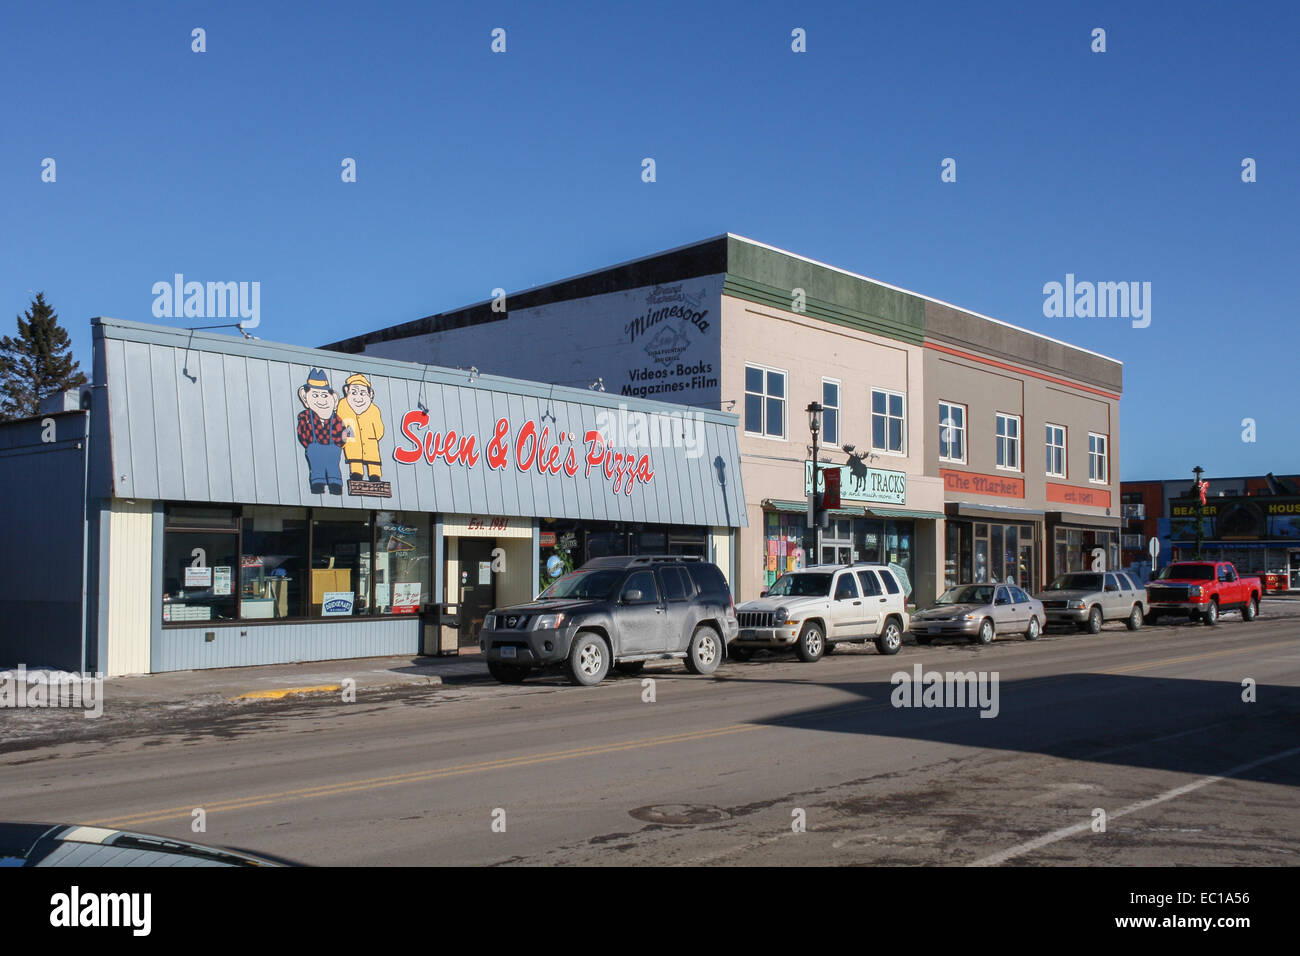 Grand Marais, Minnesota, Estados Unidos. sven y Ole's pizza de la ciudad Foto de stock